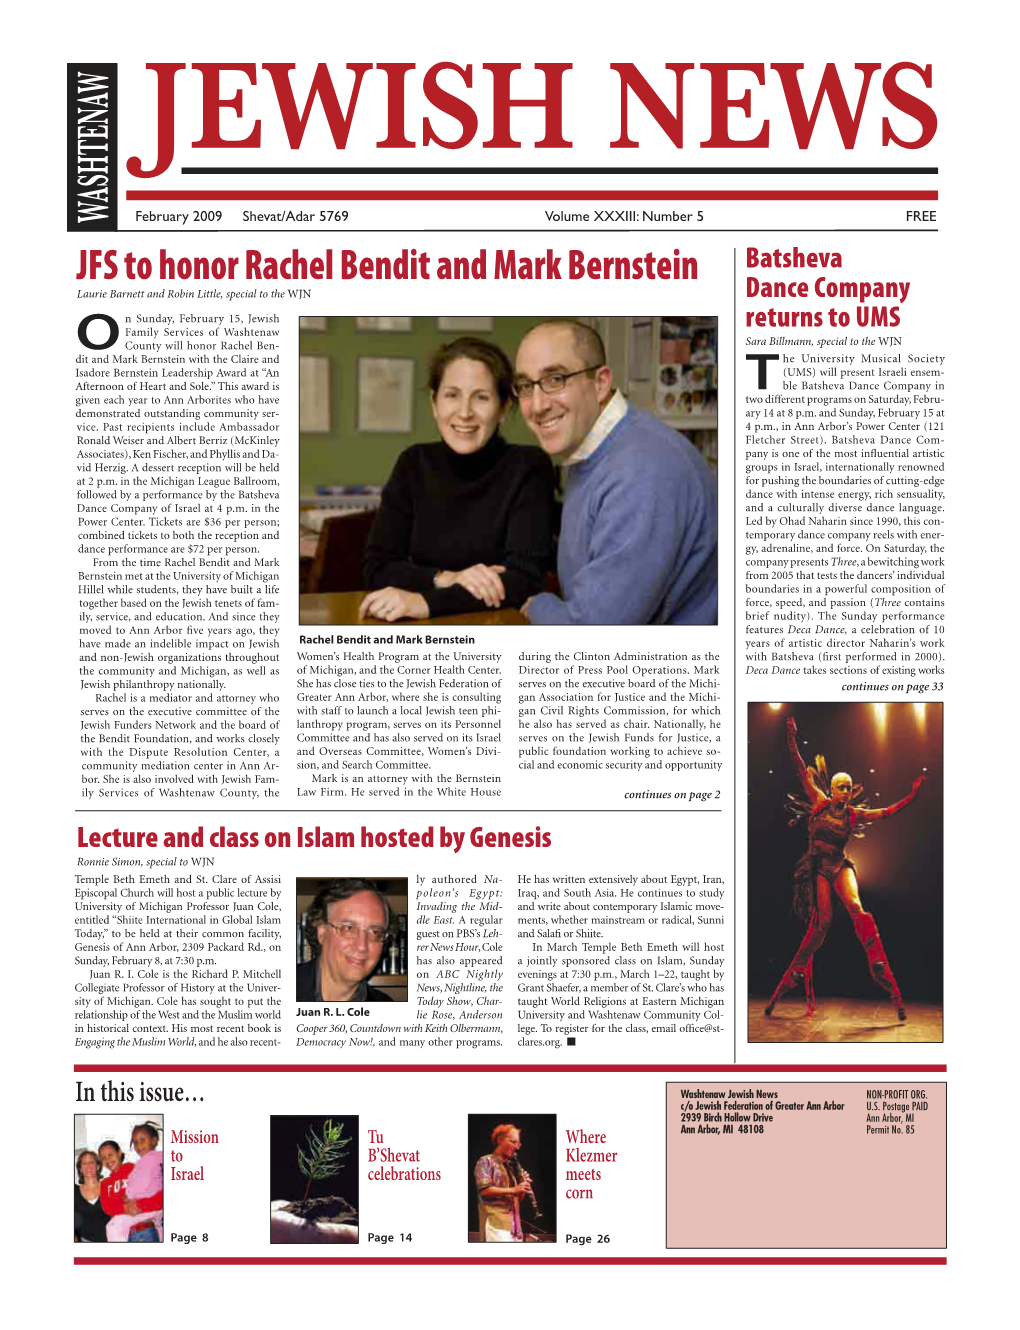 JFS to Honor Rachel Bendit and Mark Bernstein